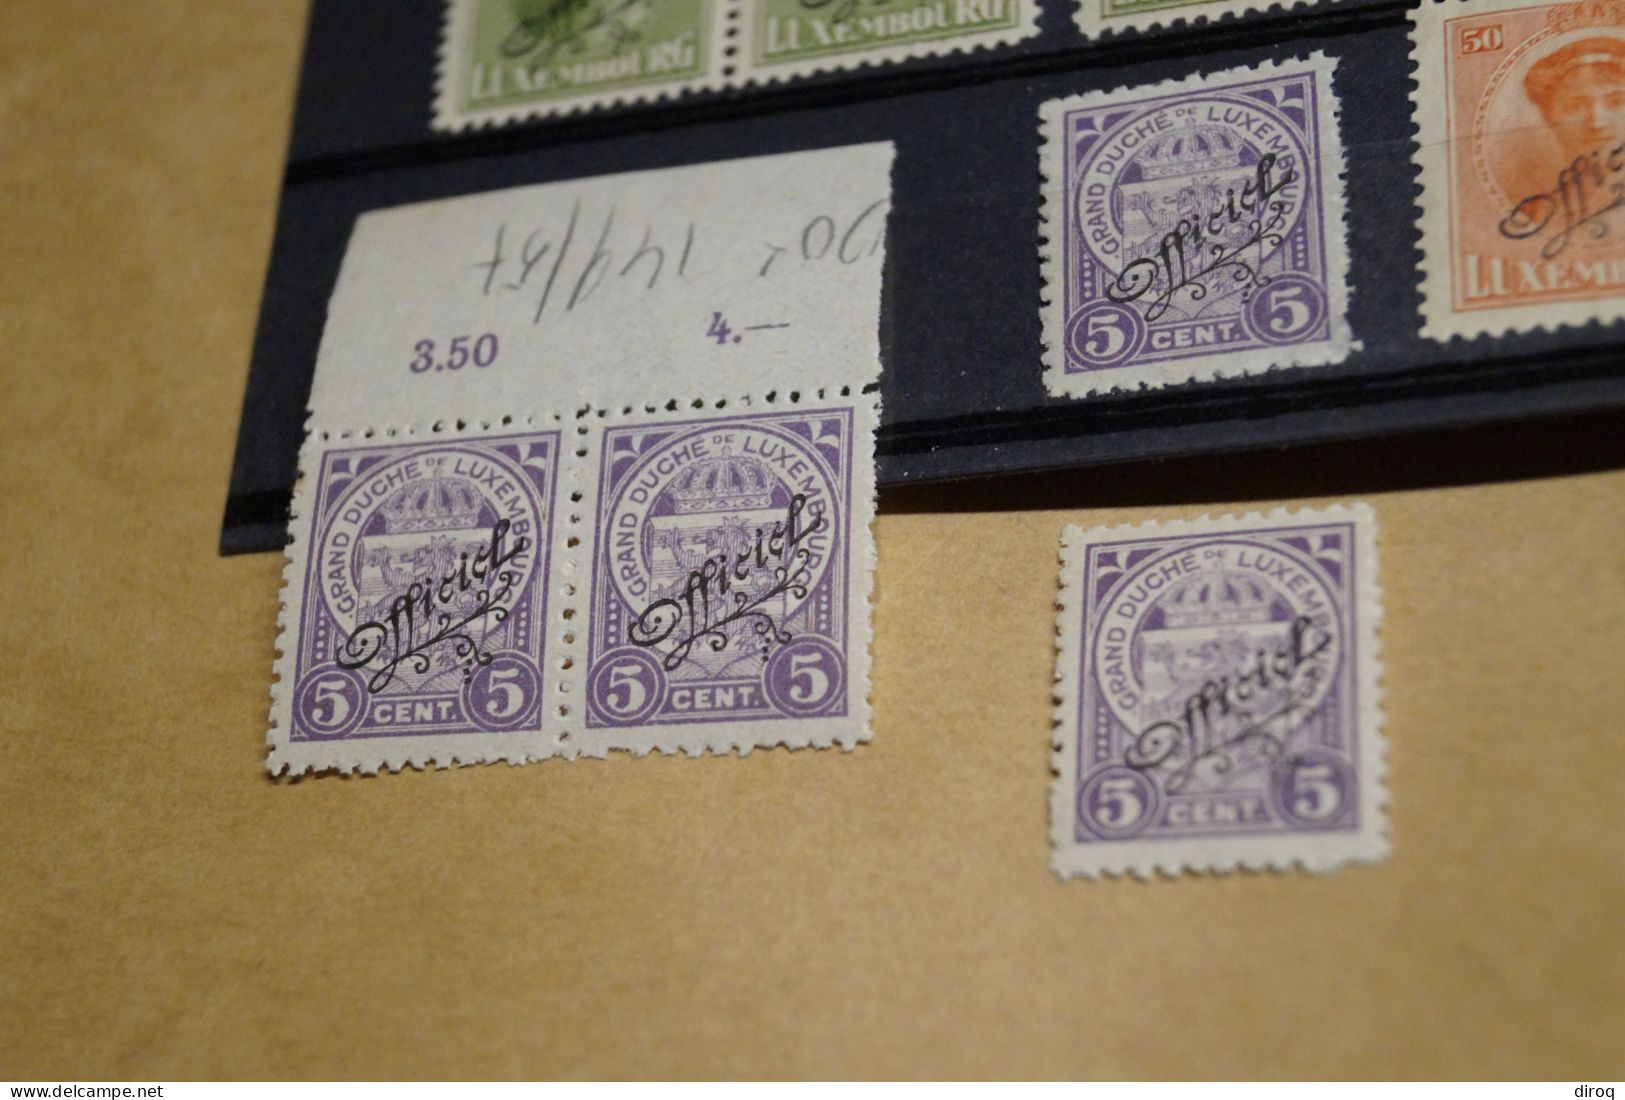 29 timbres neuf,Charlotte de face,surcharge Officiel,superbe état neuf pour collection